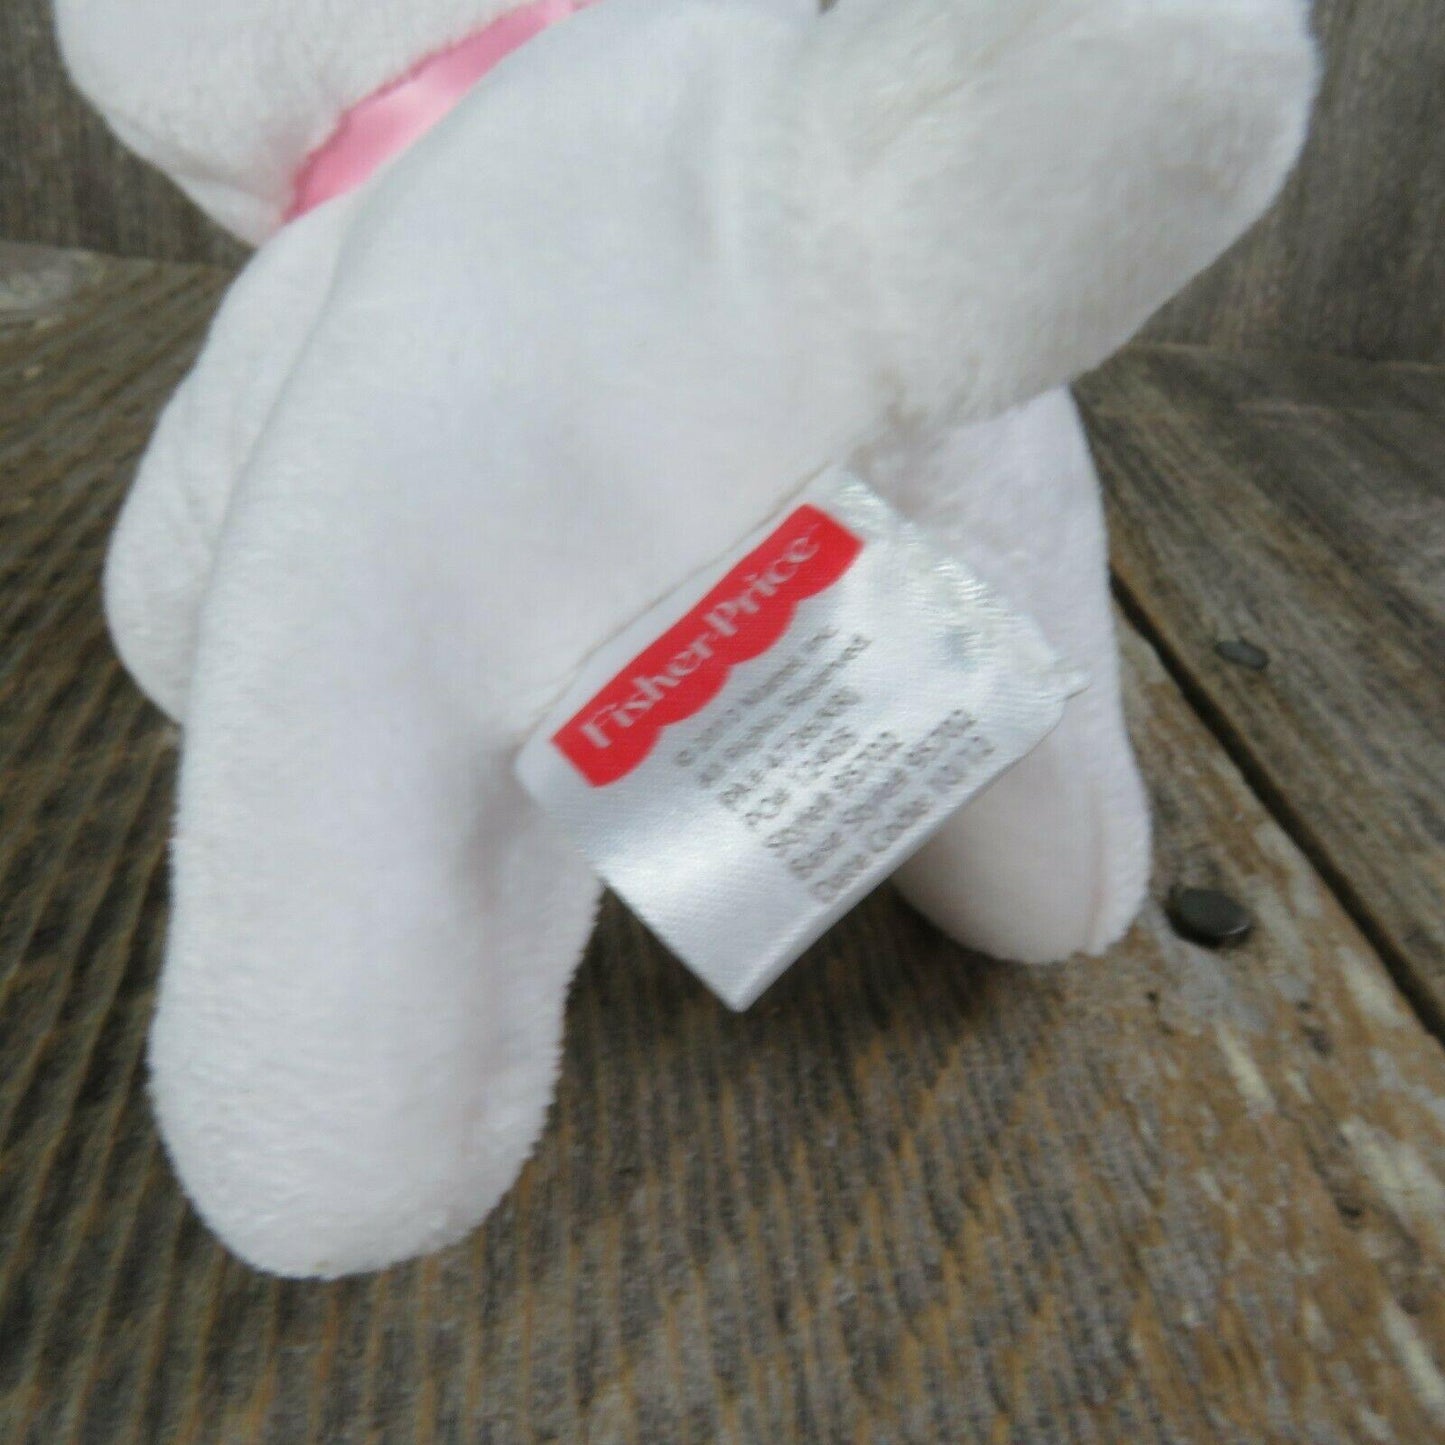 White Bunny Plush Rabbit Fisher Price Sewn Eyes Pink Nose Ears Mattel 2013